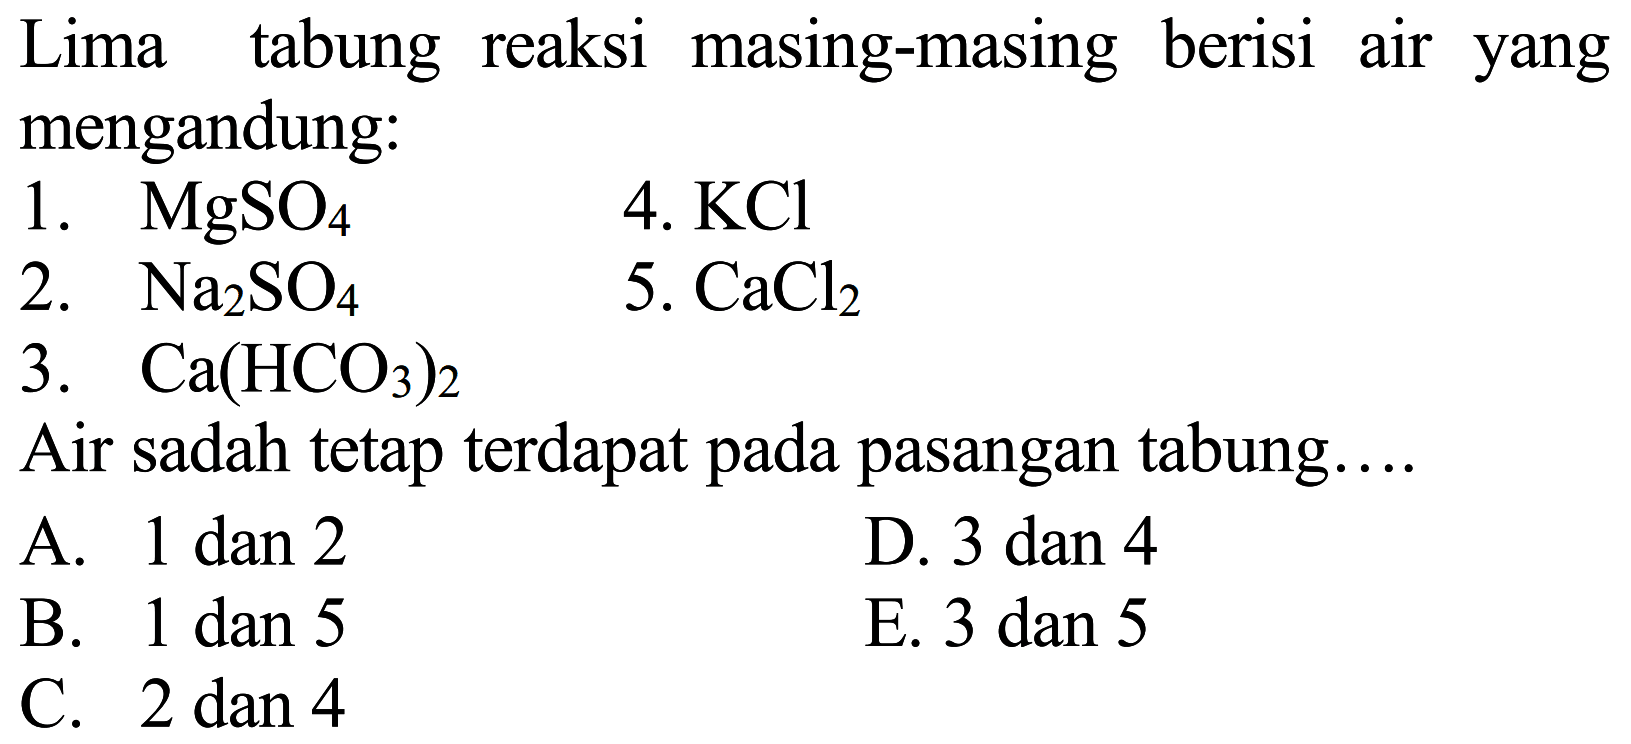 Lima tabung reaksi masing-masing berisi air yang mengandung:
1.  MgSO_(4) 
4.  KCl 
2.  Na_(2) SO_(4) 
5.  CaCl_(2) 
3.  Ca(HCO_(3))_(2) 
Air sadah tetap terdapat pada pasangan tabung....
